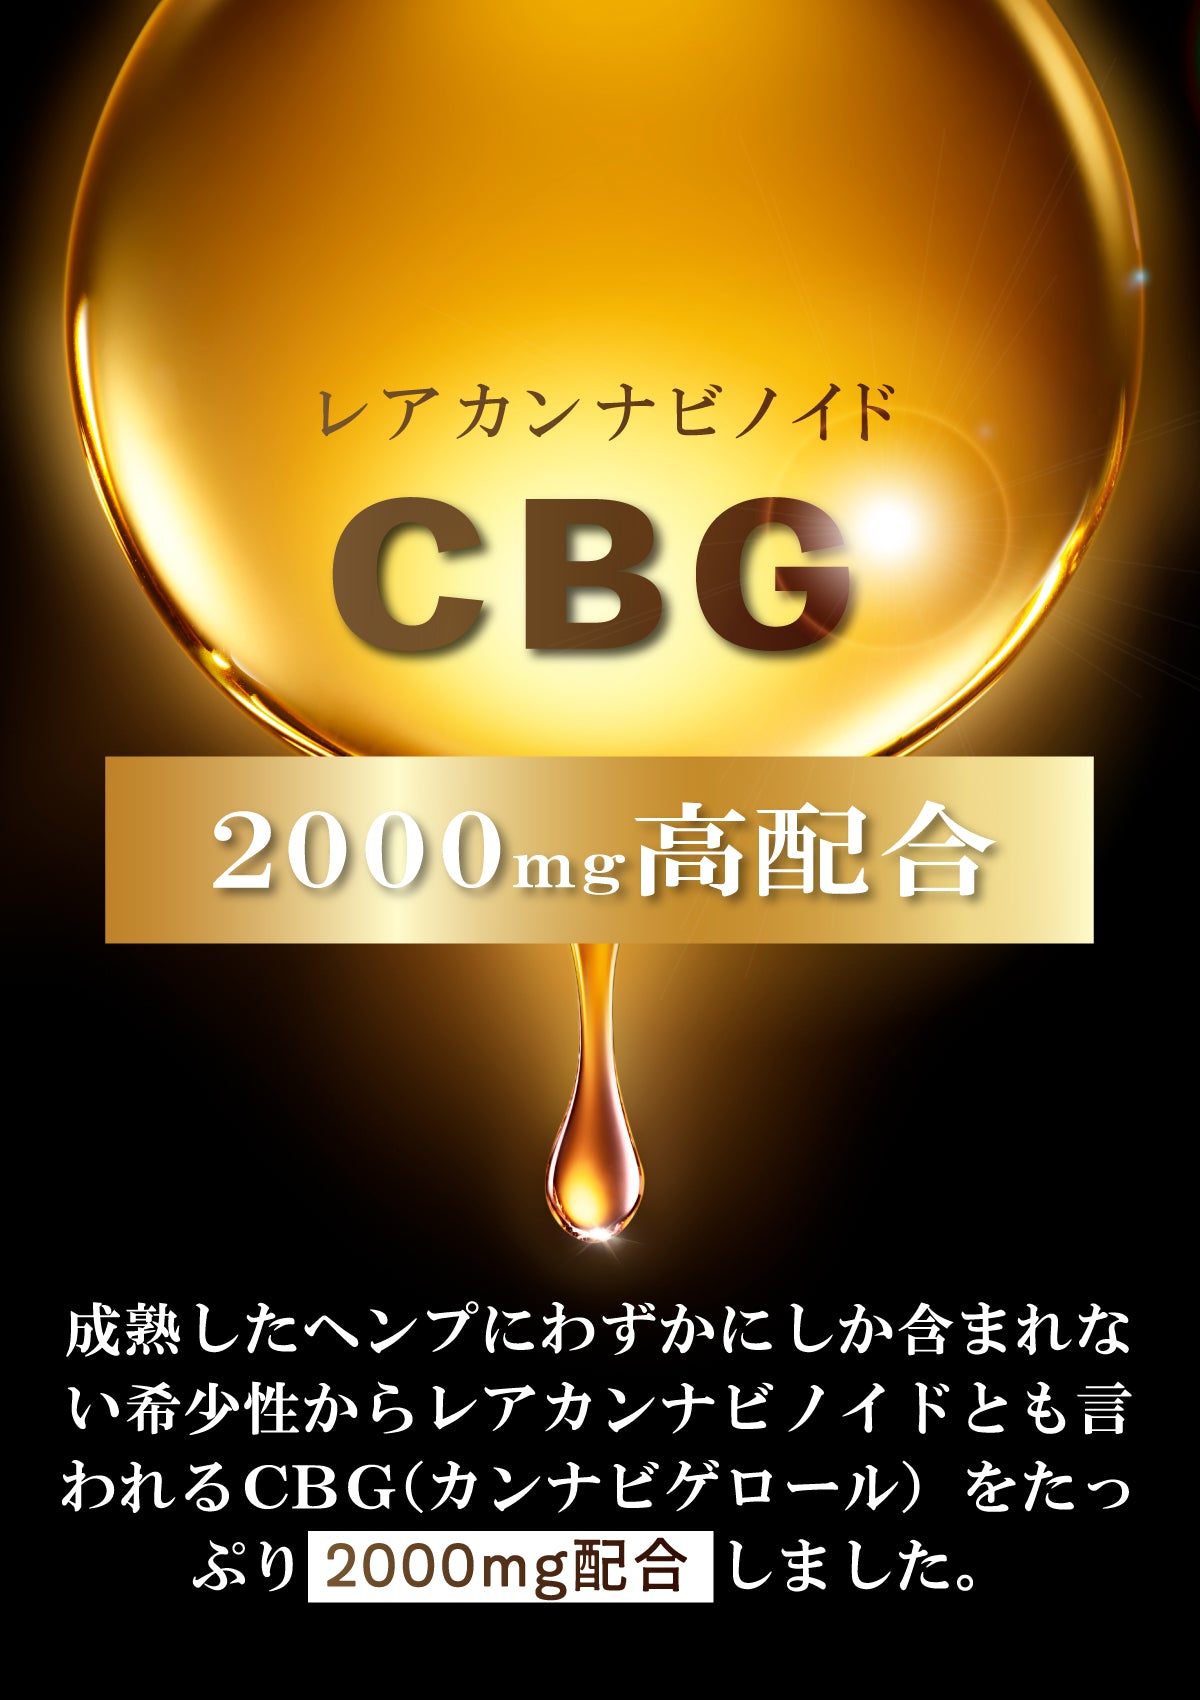 CANNAXIA カンナシア CBGオイル ブロードスペクトラム 高濃度CBG20% 2000mg配合 容量 10ml 日本製